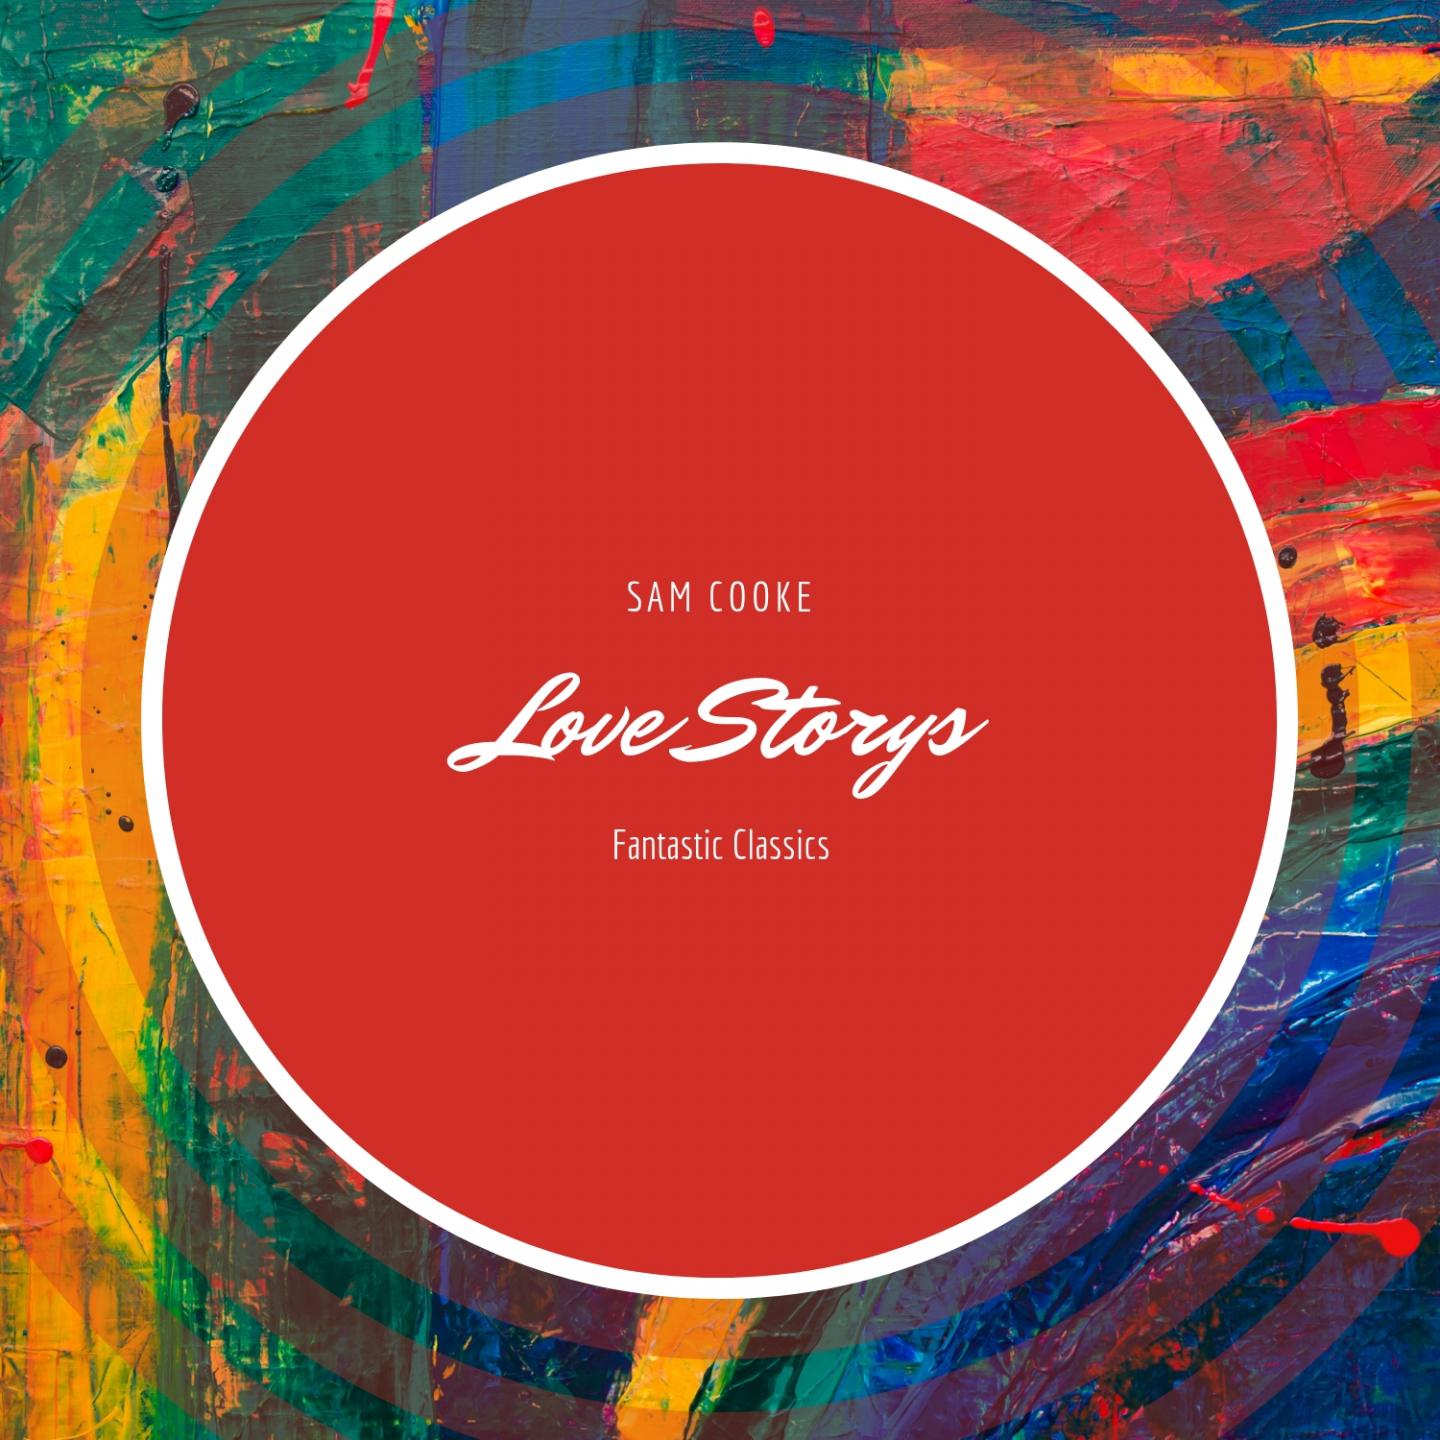 Love Storys